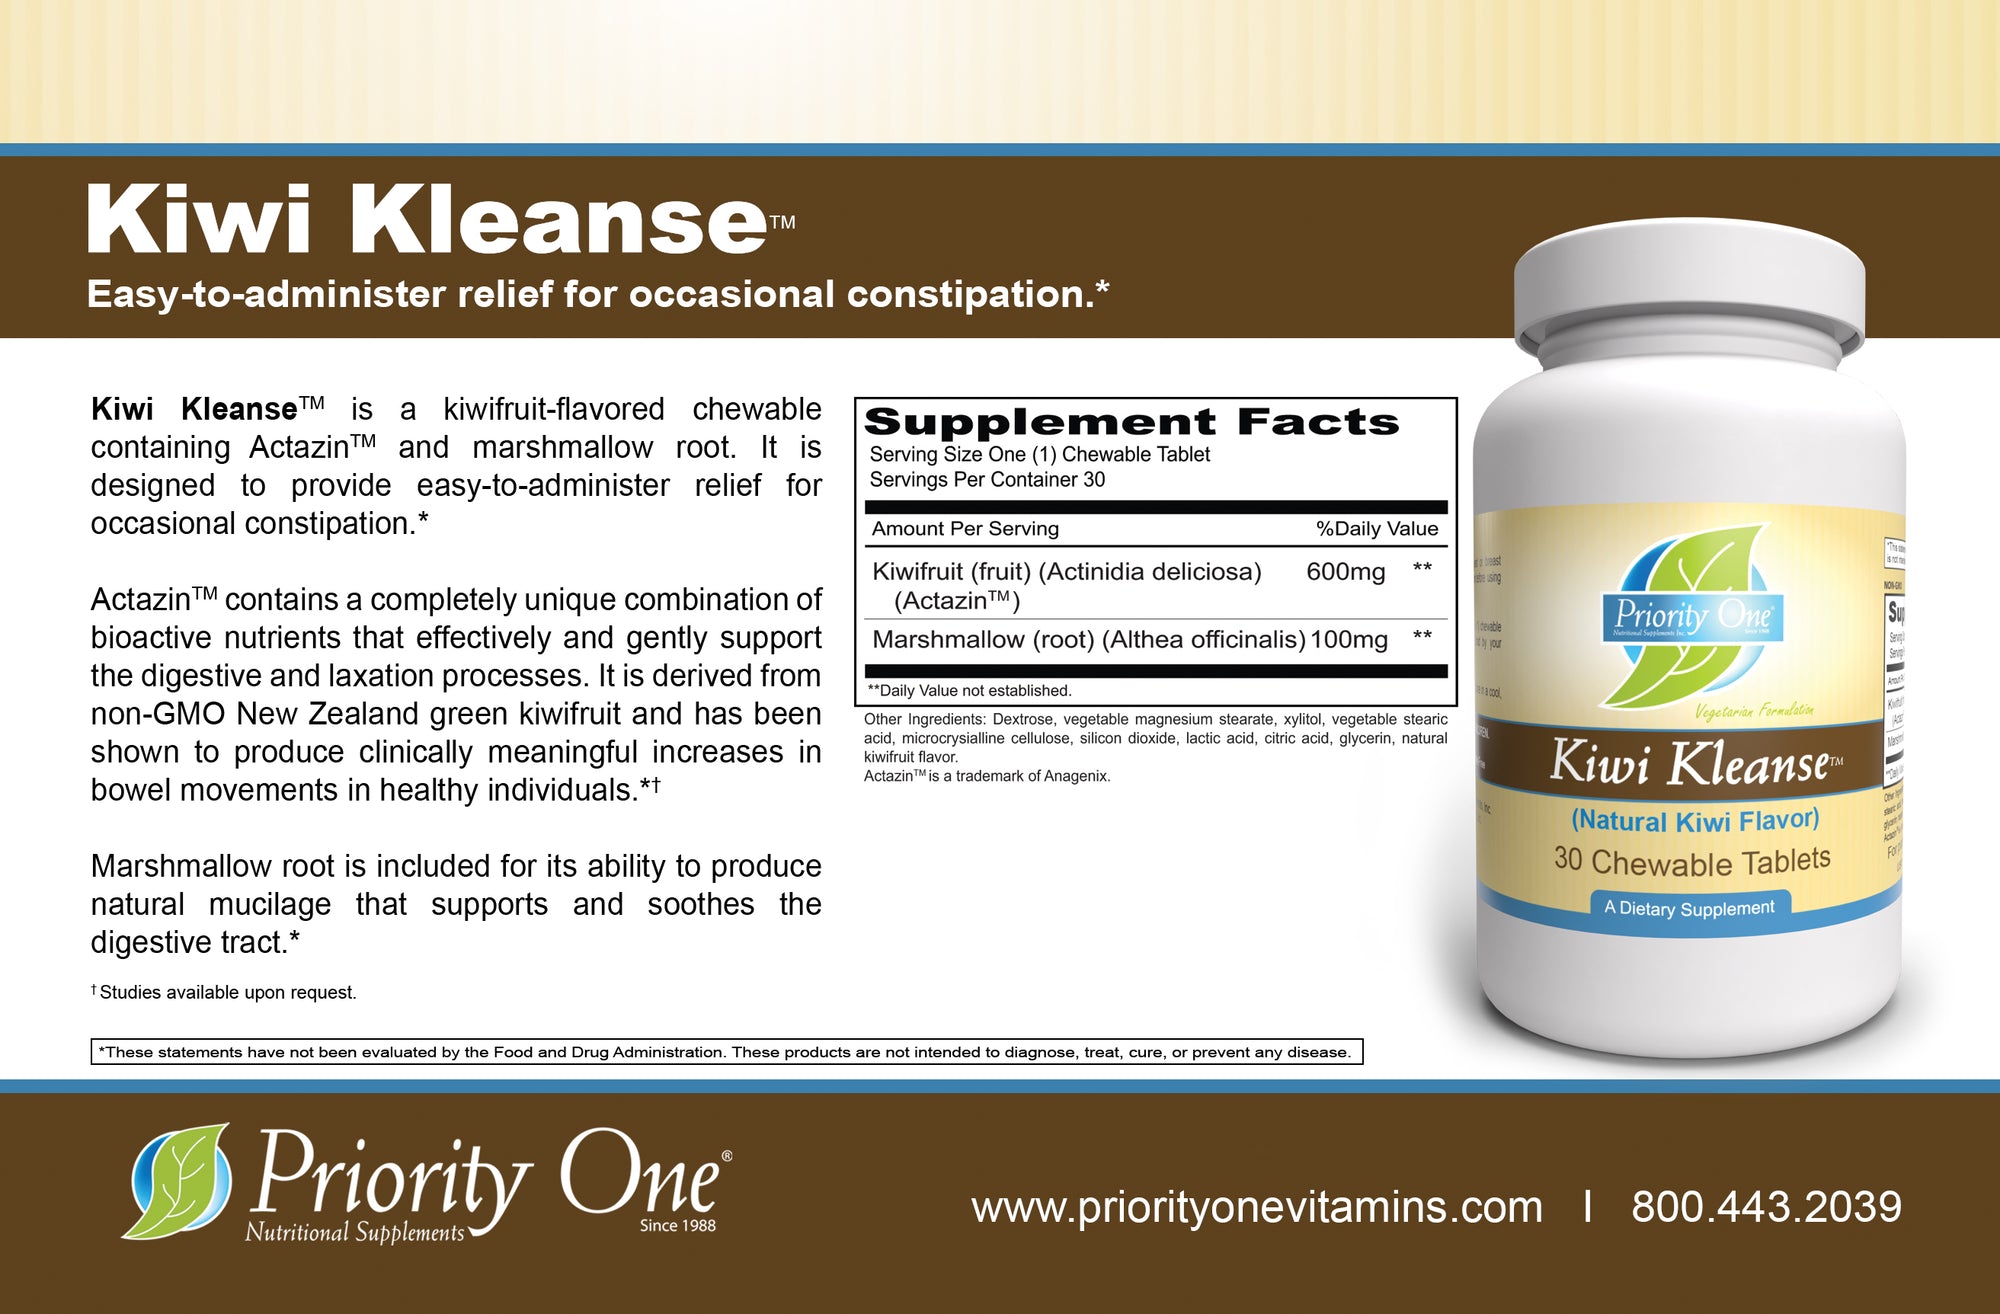 Kiwi Kleanse (30 Comprimidos Masticables) Kiwi Kleanse son comprimidos masticables para el estreñimiento. Son fáciles de administrar para aliviar el estreñimiento ocasional.*